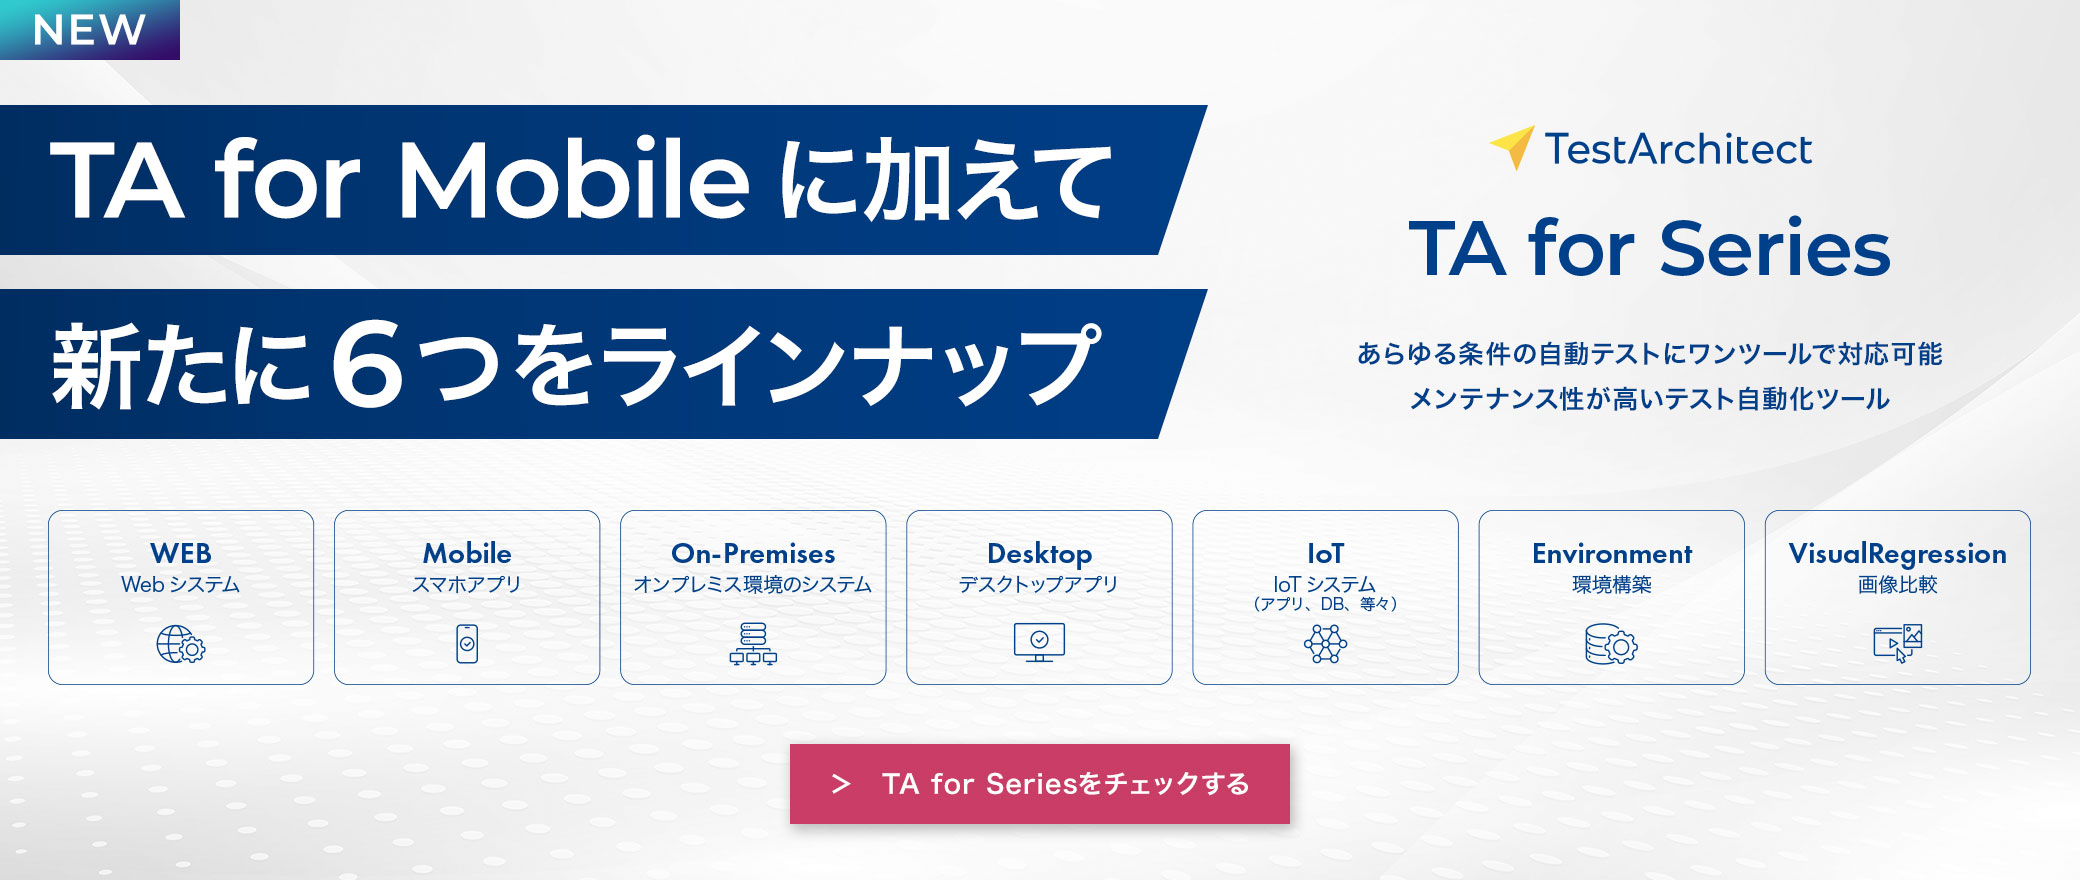 【TestArchitect】TA for Mobileに加えて新たに6つをラインナップ